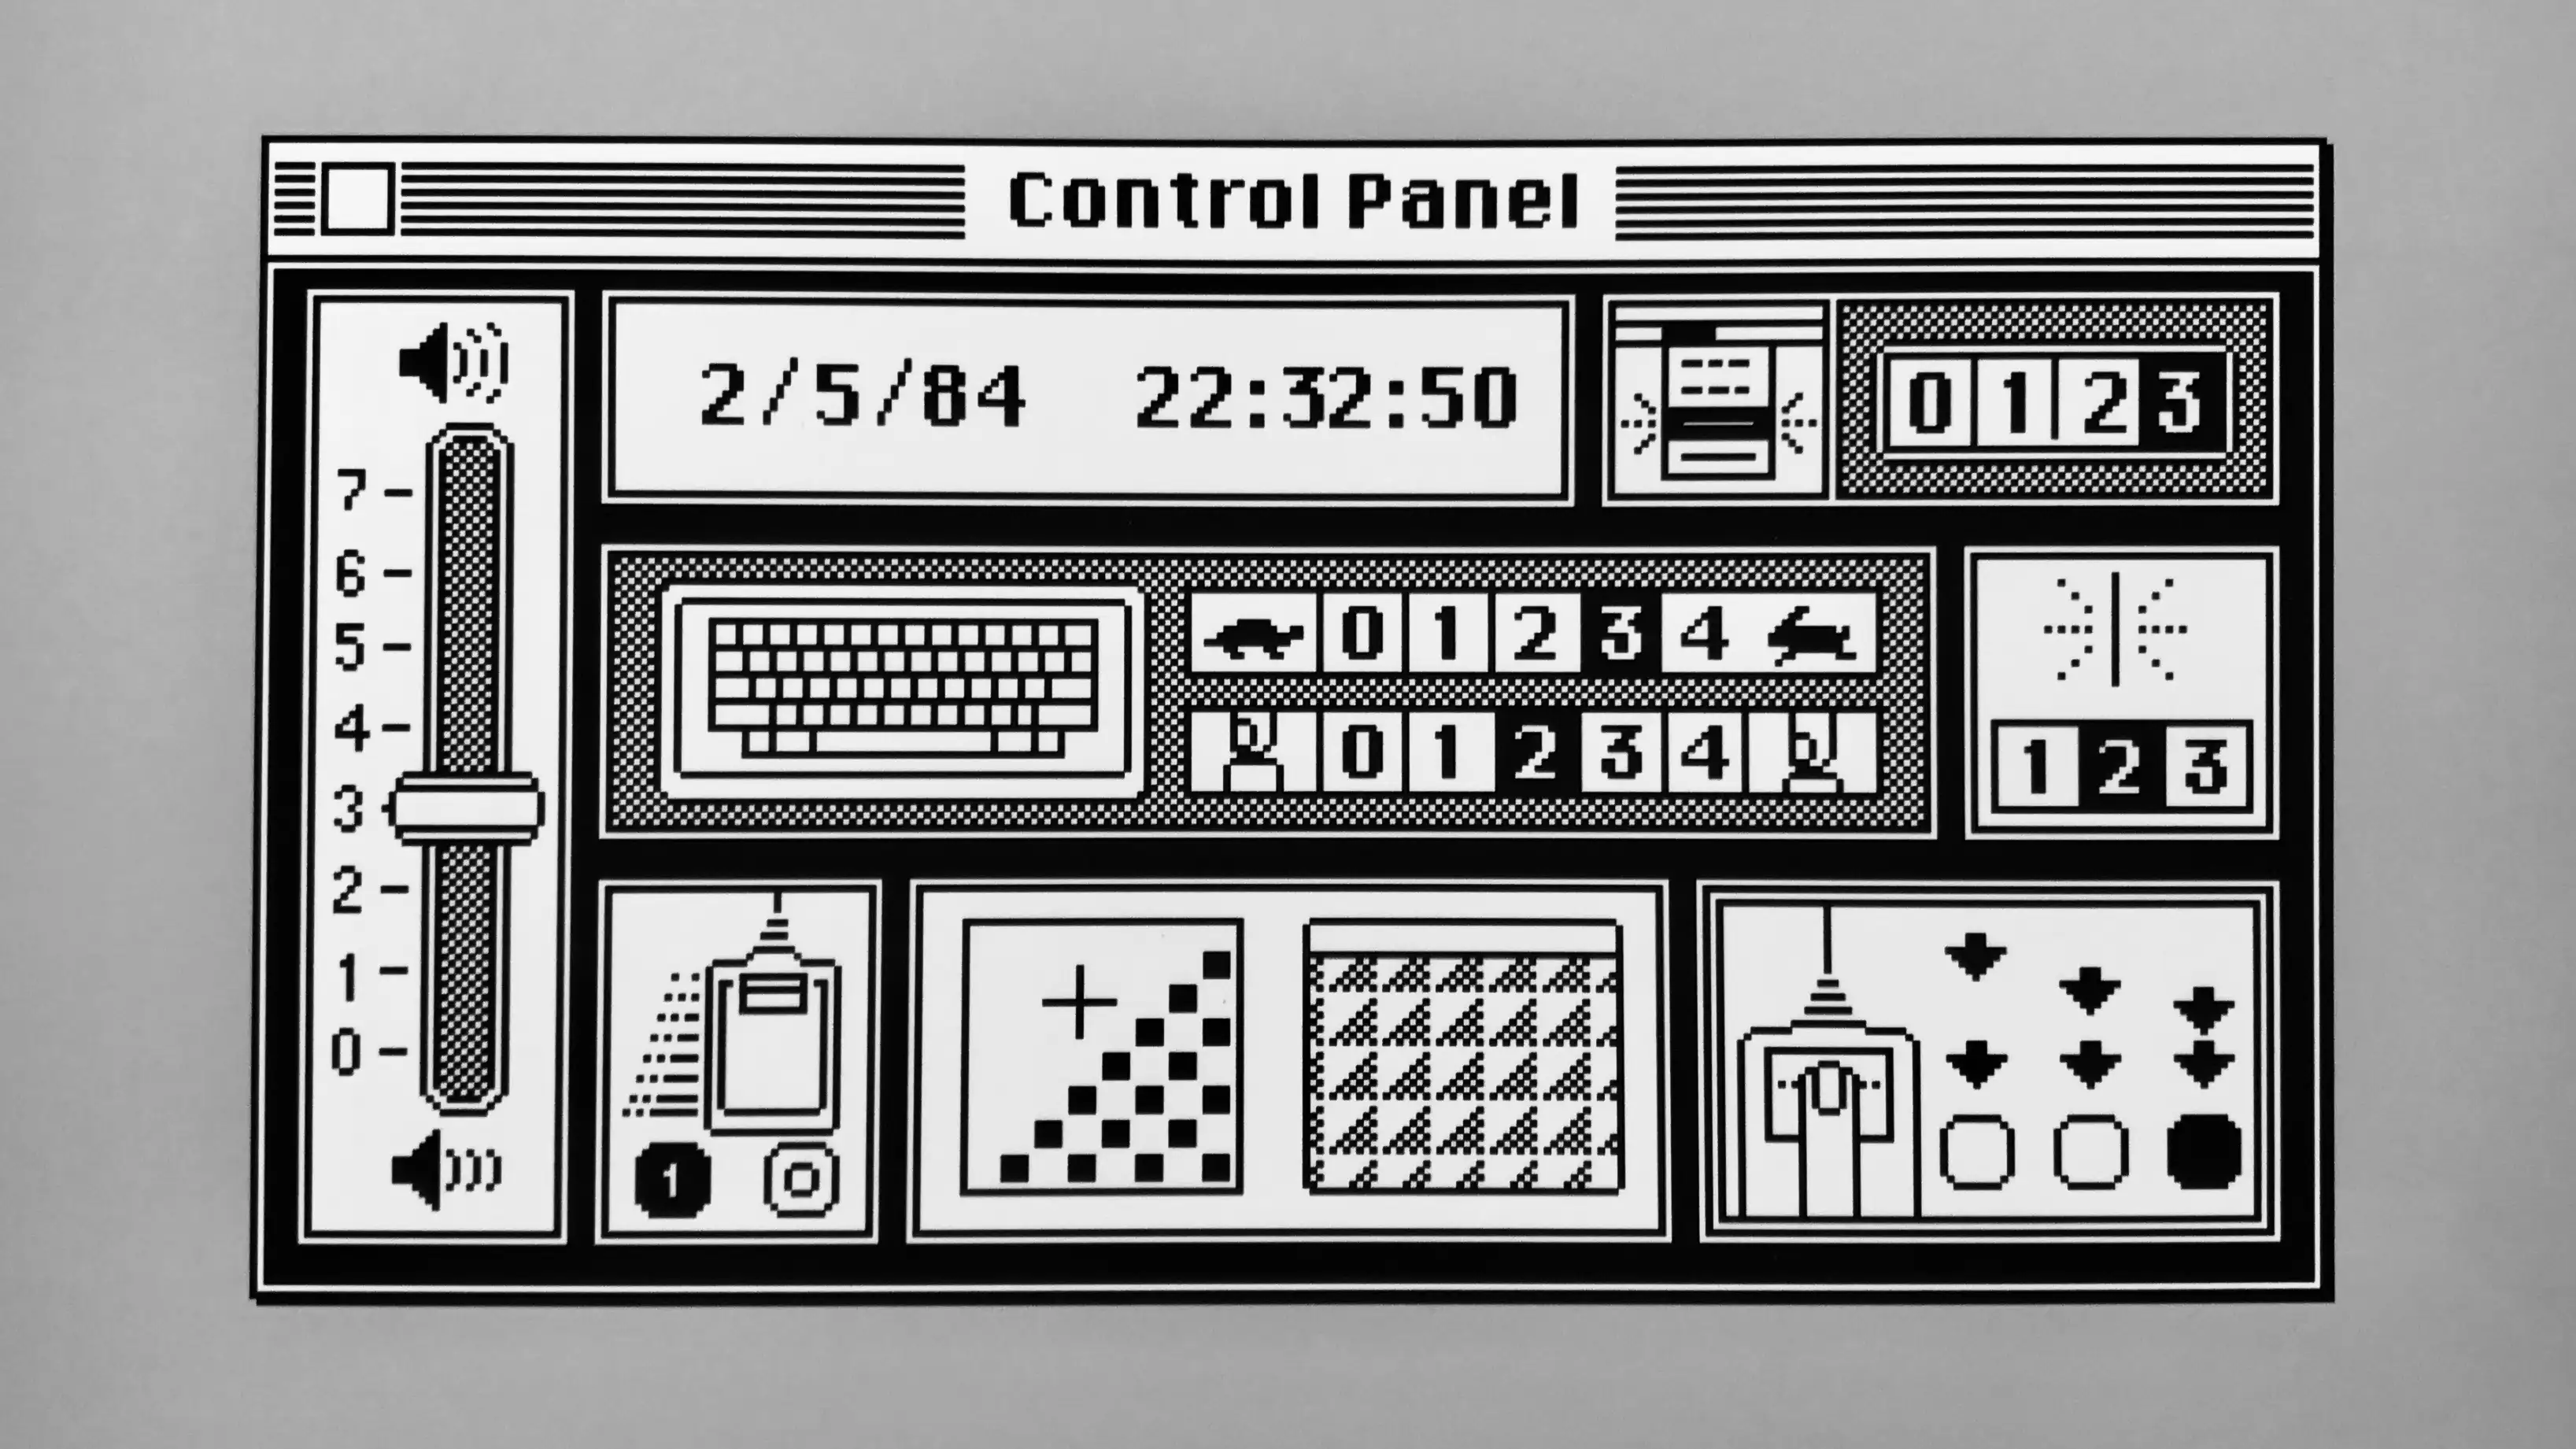 Susan Kare's original Macintosh control panel (1984)